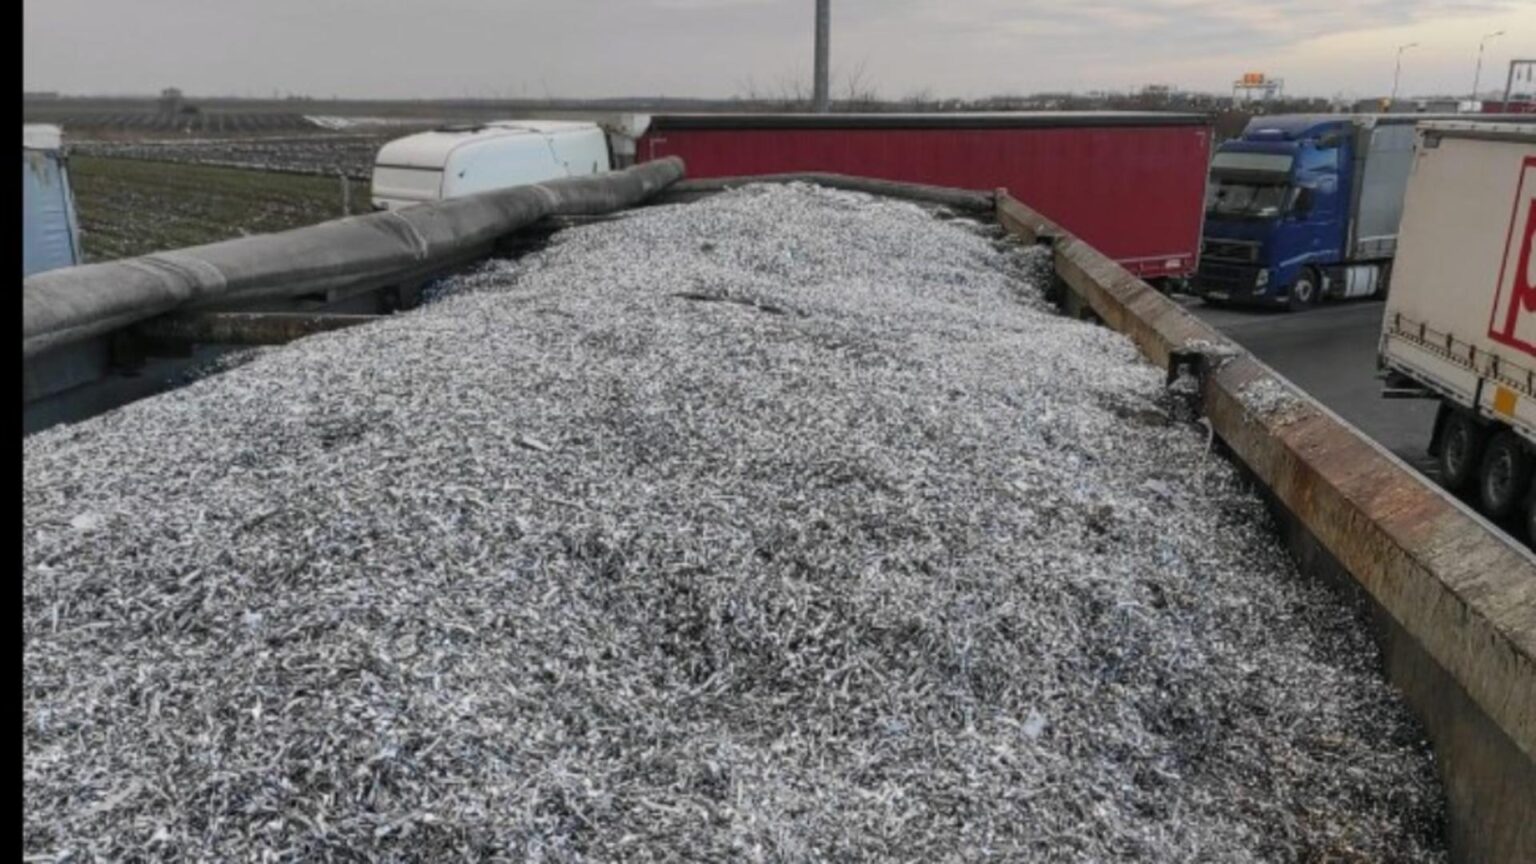 Aproape 100 de tone de deșeuri, oprite de Garda de Mediu la graniță în doar câteva zile